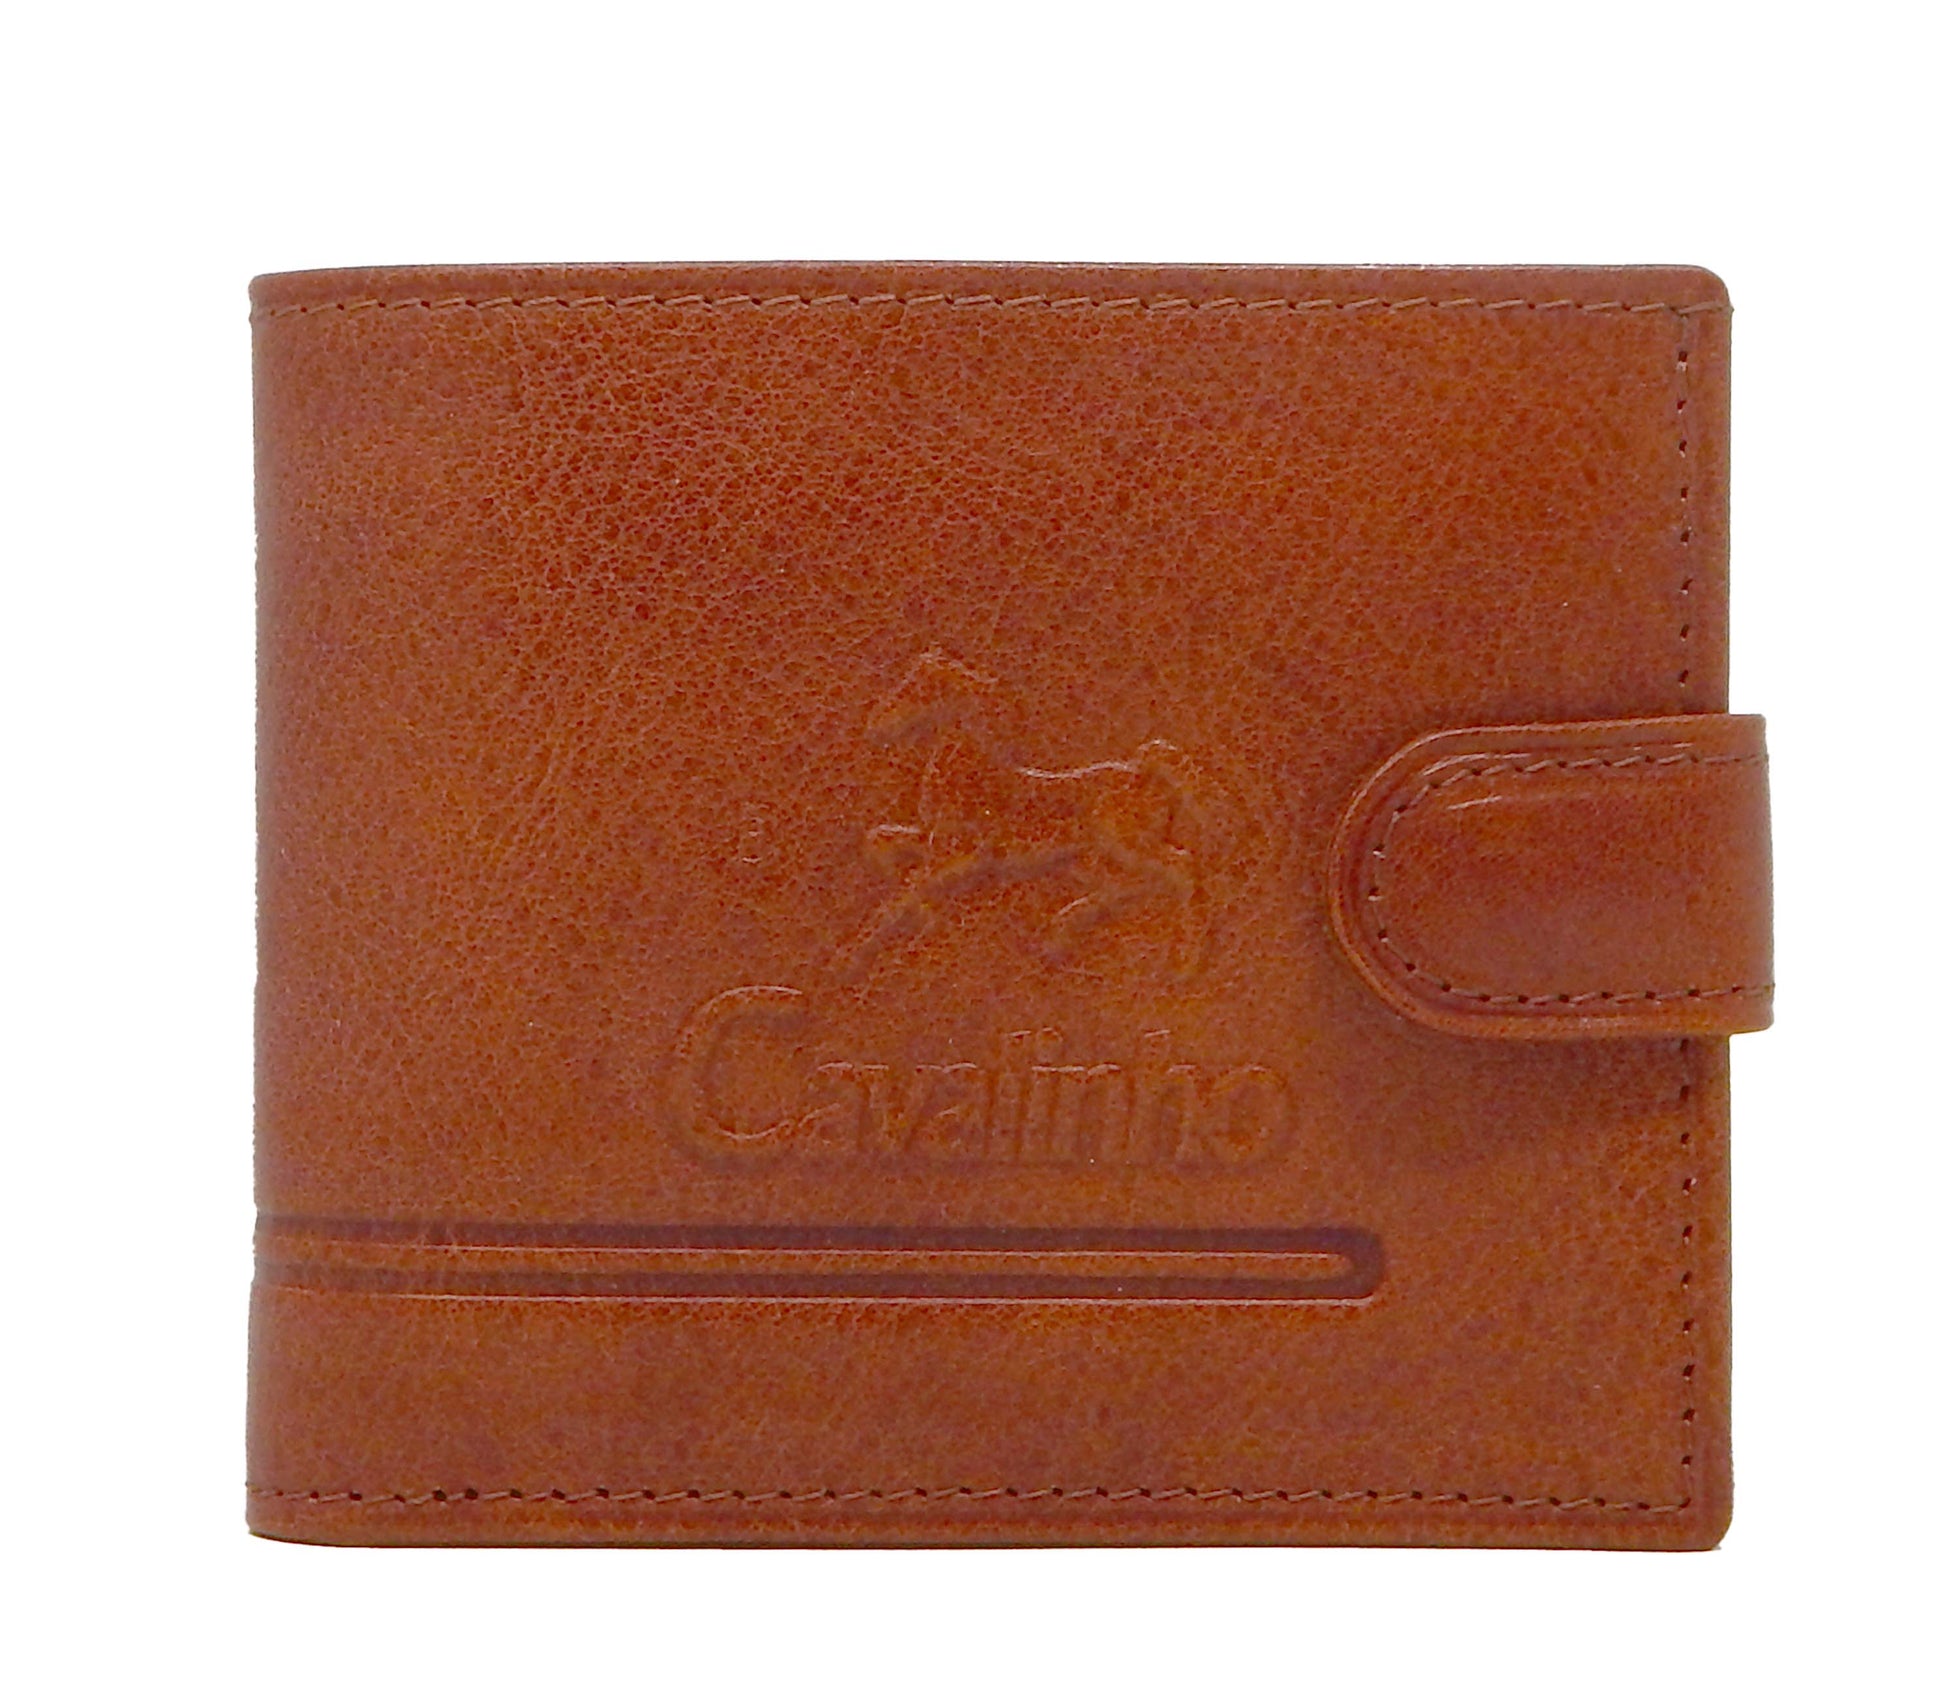 #color_ SaddleBrown | Cavalinho Men's Bifold Leather Wallet - SaddleBrown - 28160516.13.99_1